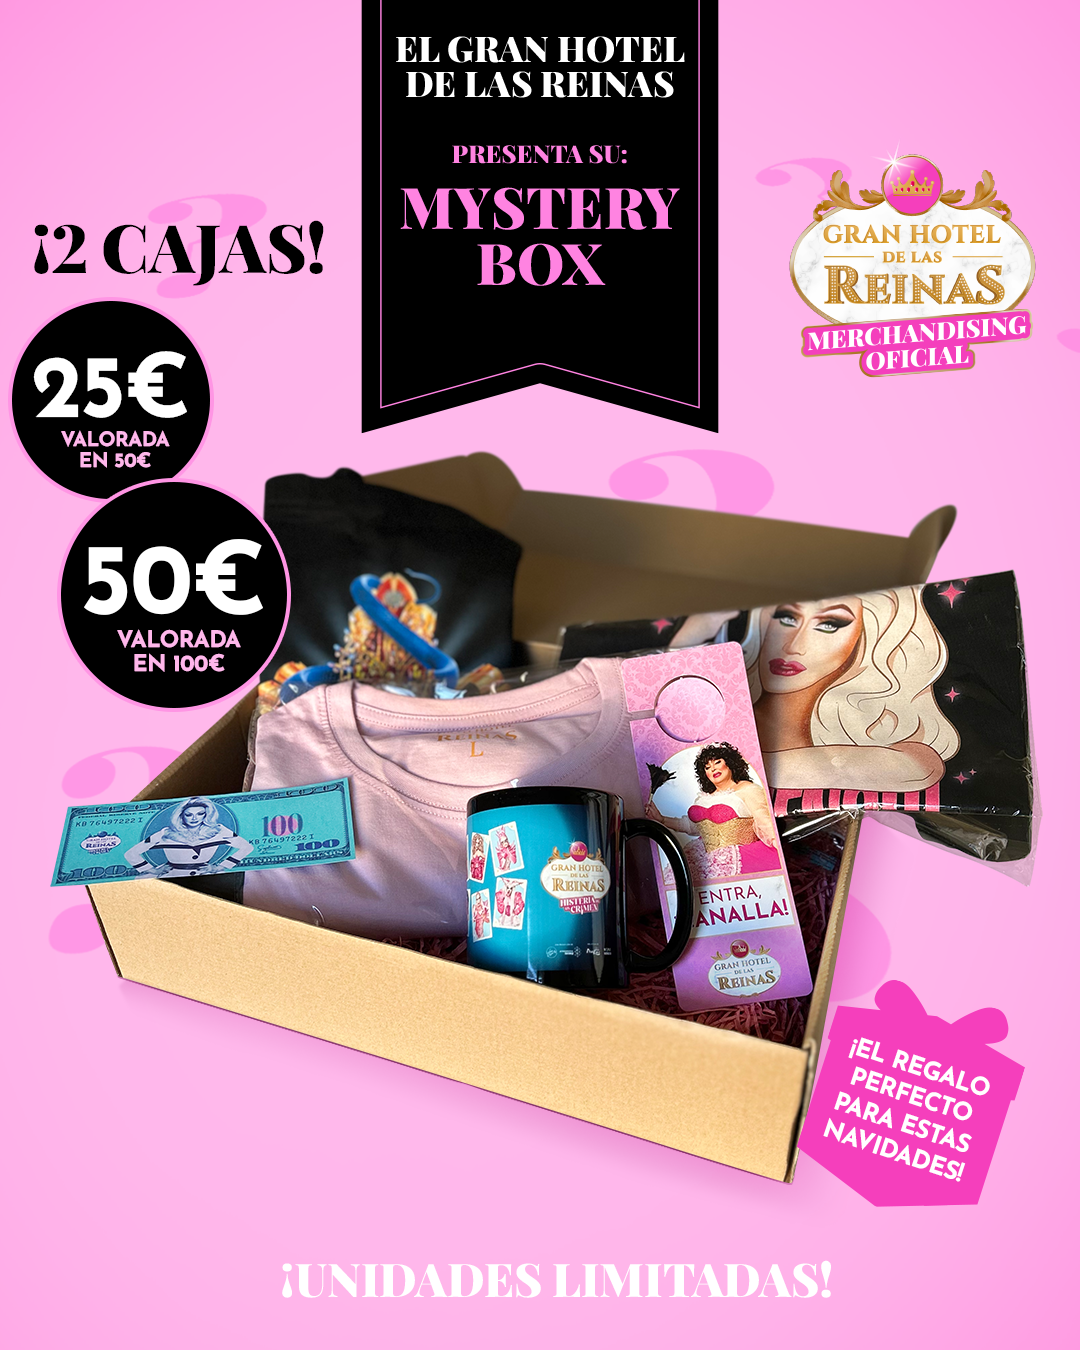 Mistery Box Gran Hotel de las Reinas 25€